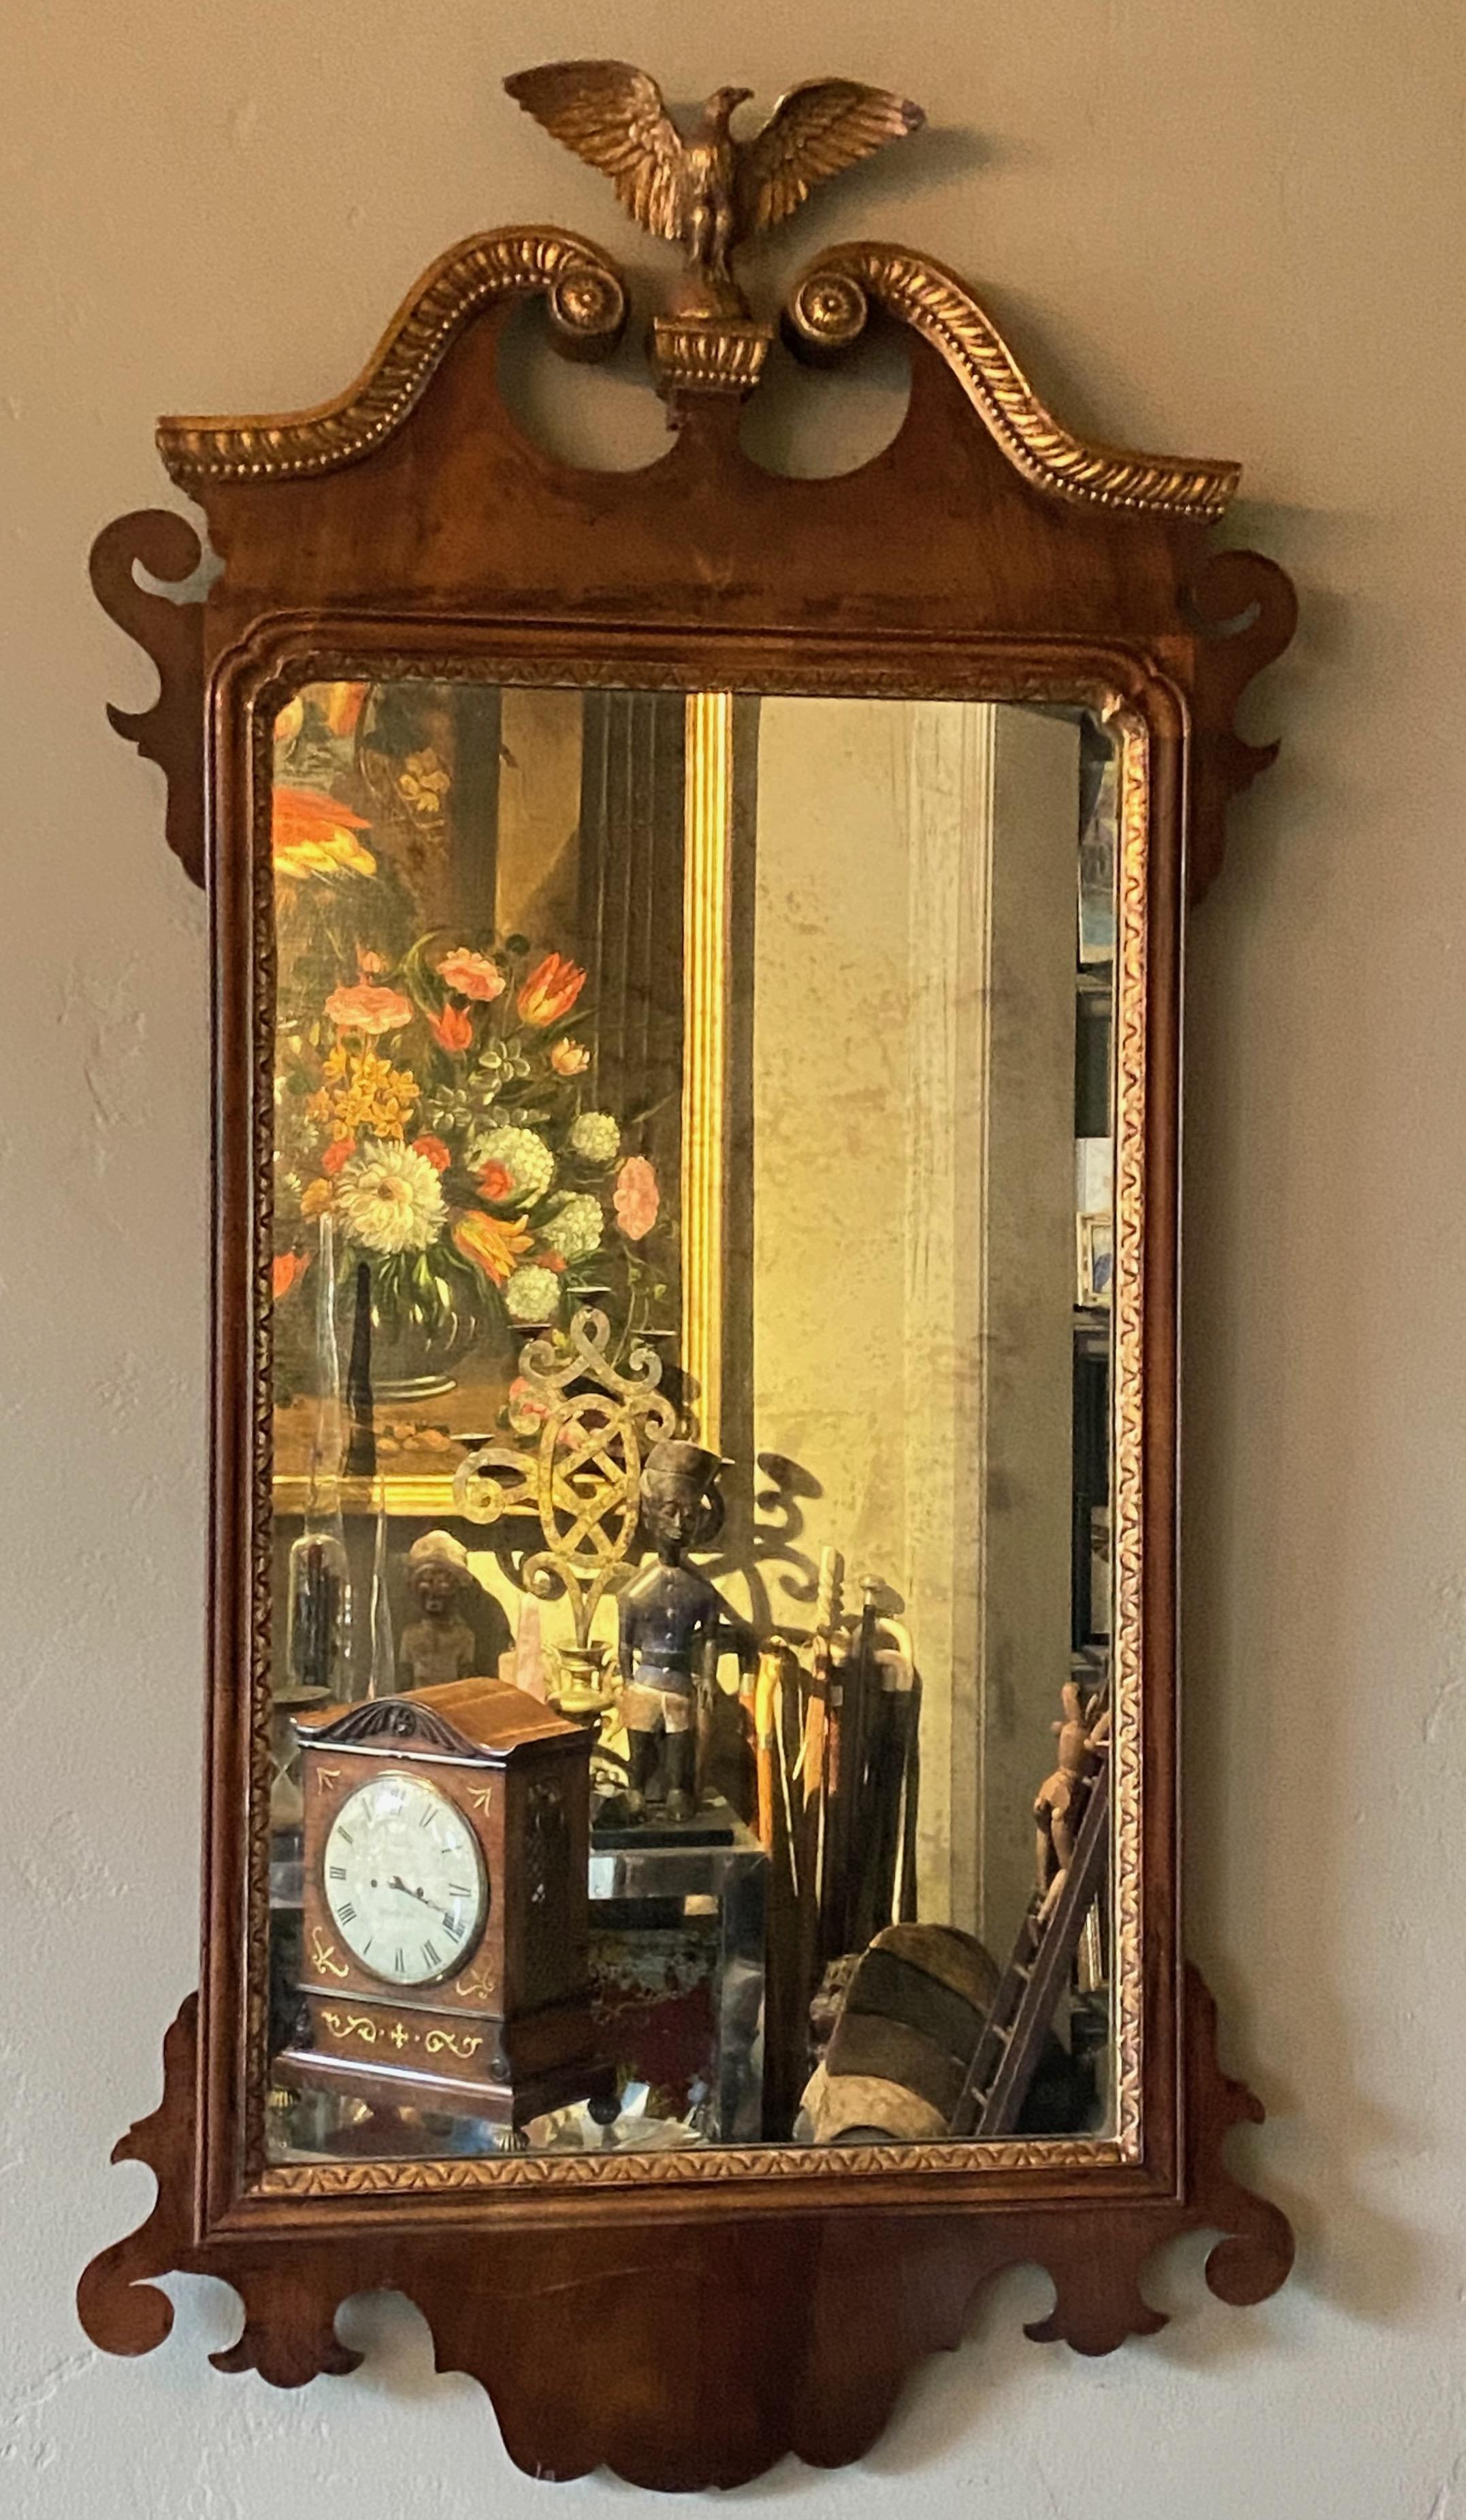 Ein klassischer amerikanischer Mahagoni-Spiegel im Chippendale-Stil mit gealtertem Glasspiegel und vergoldeten Details.
Amerikanisch, frühes 19. Jahrhundert.